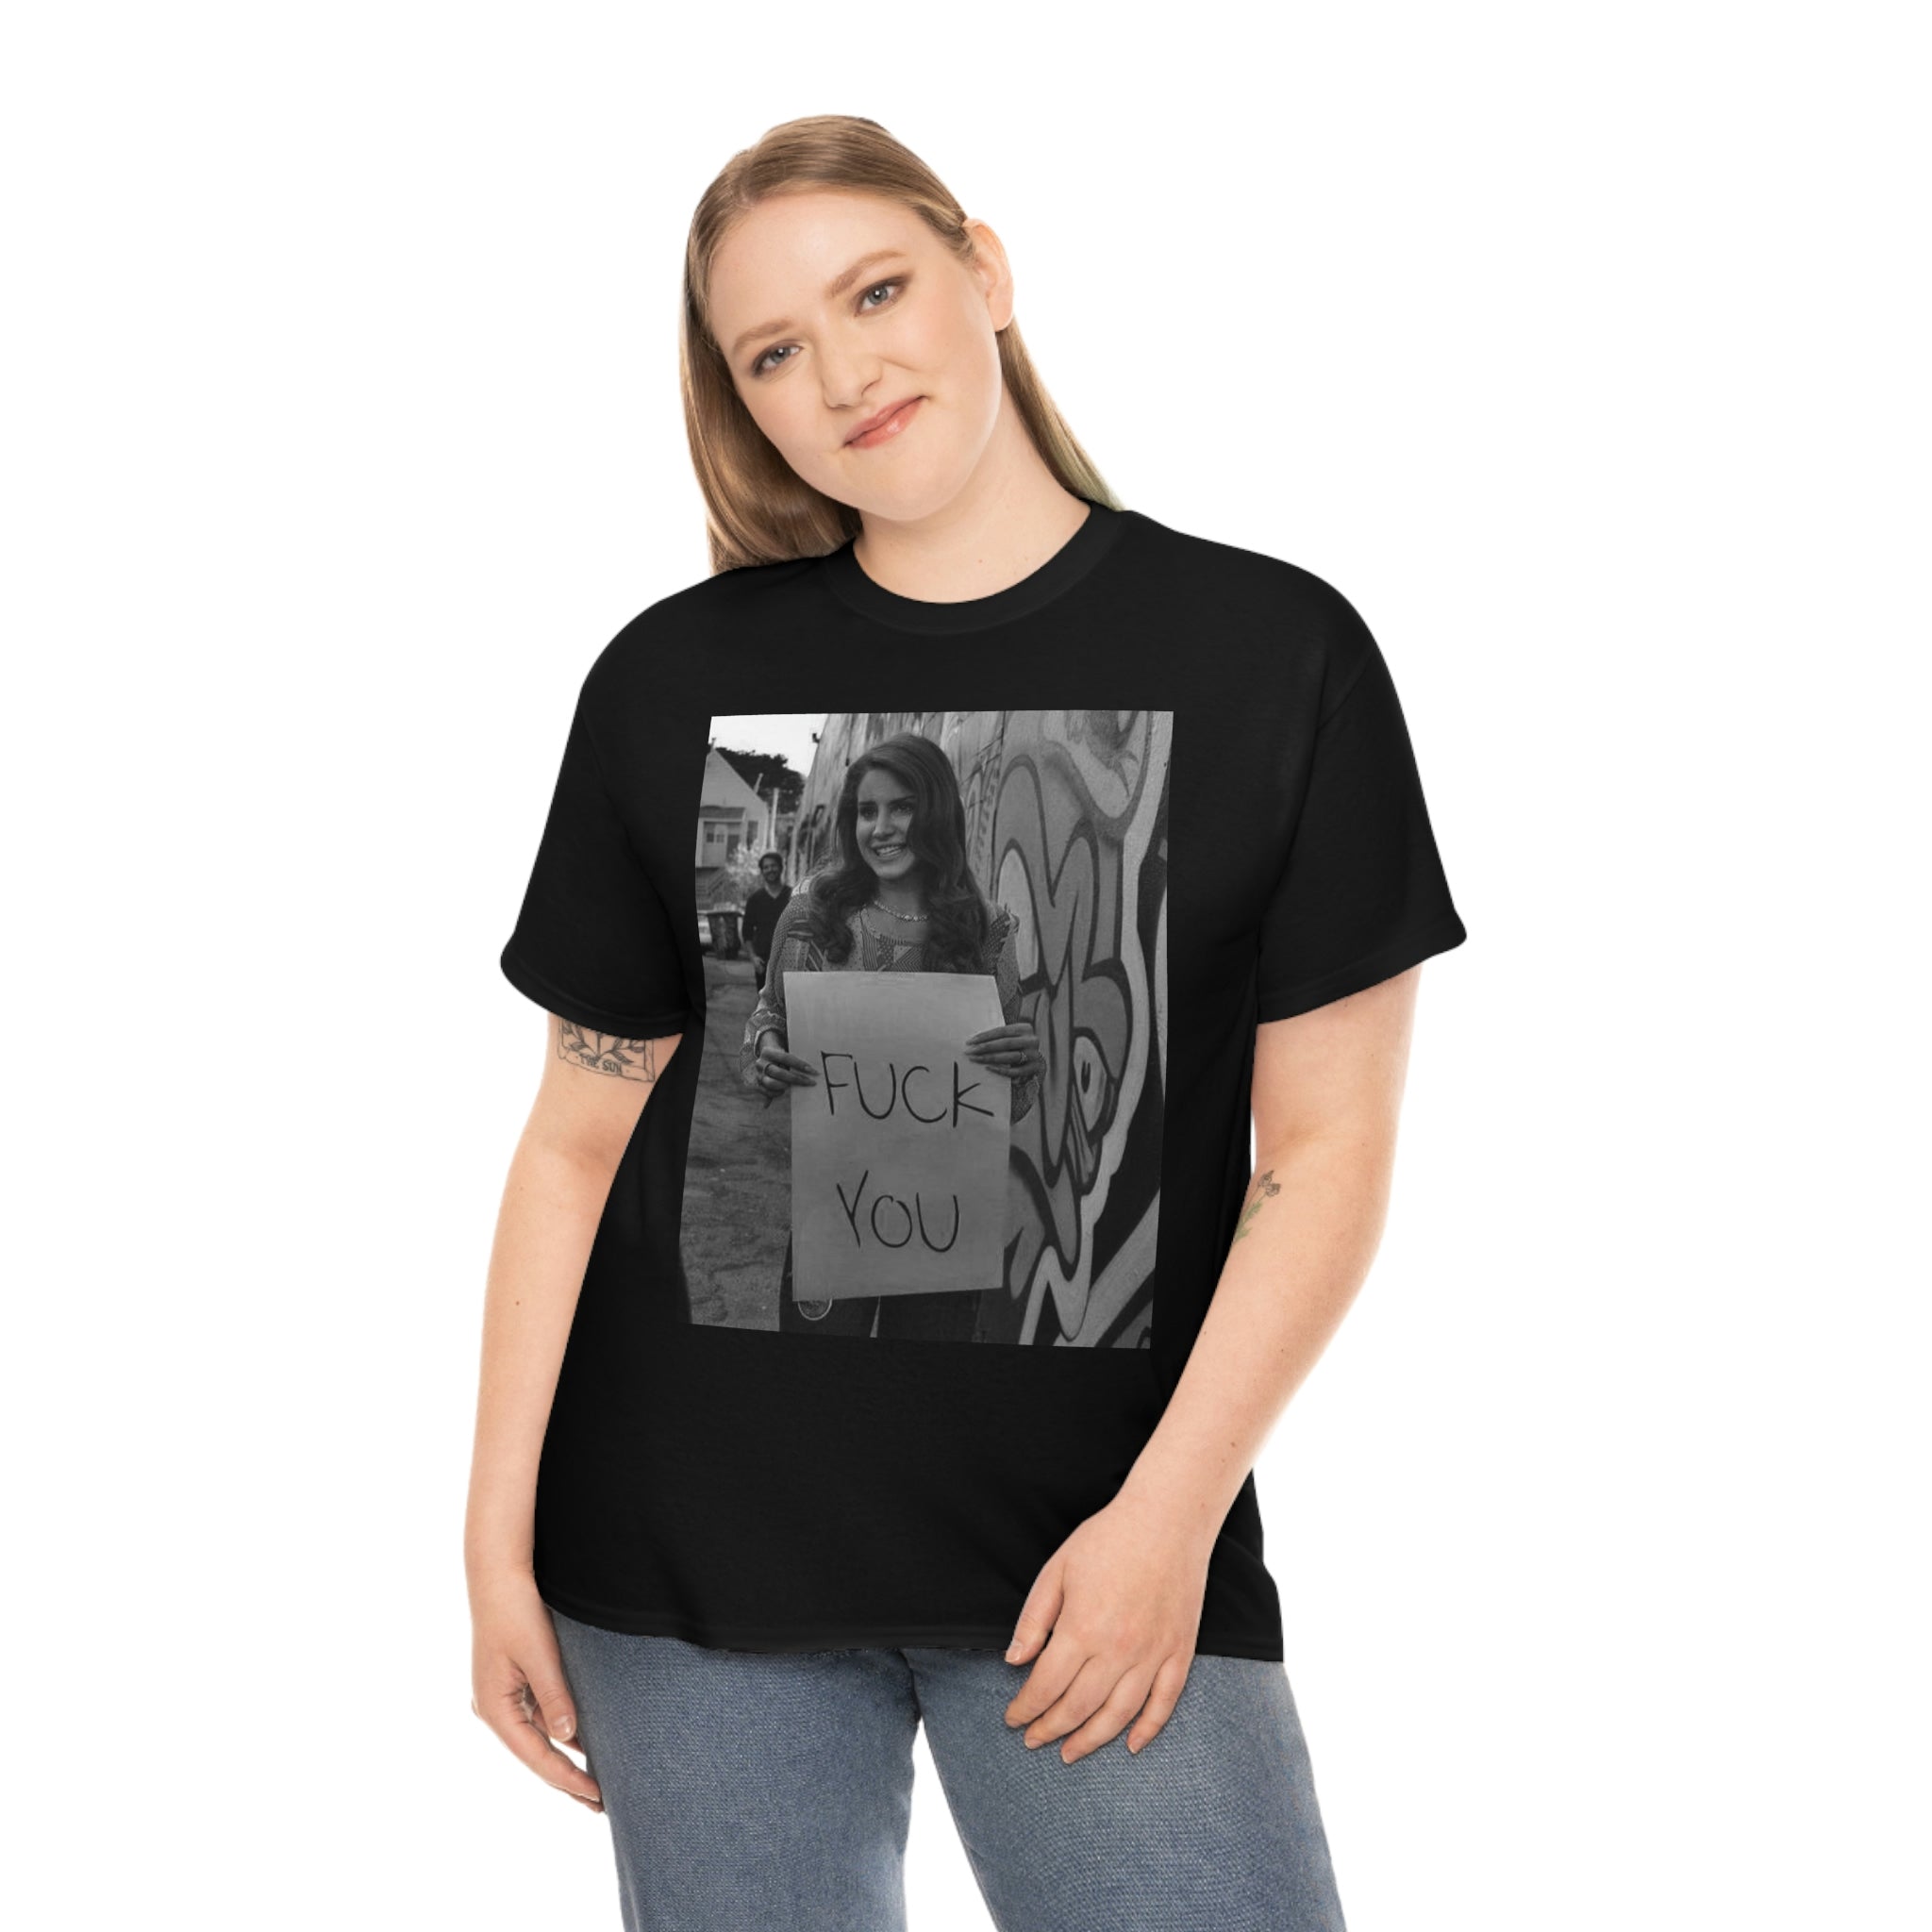 Lana Del Rey Funny T-shirt, Lana Del Rey 2023 T-shirt, Lana Del Rey merch